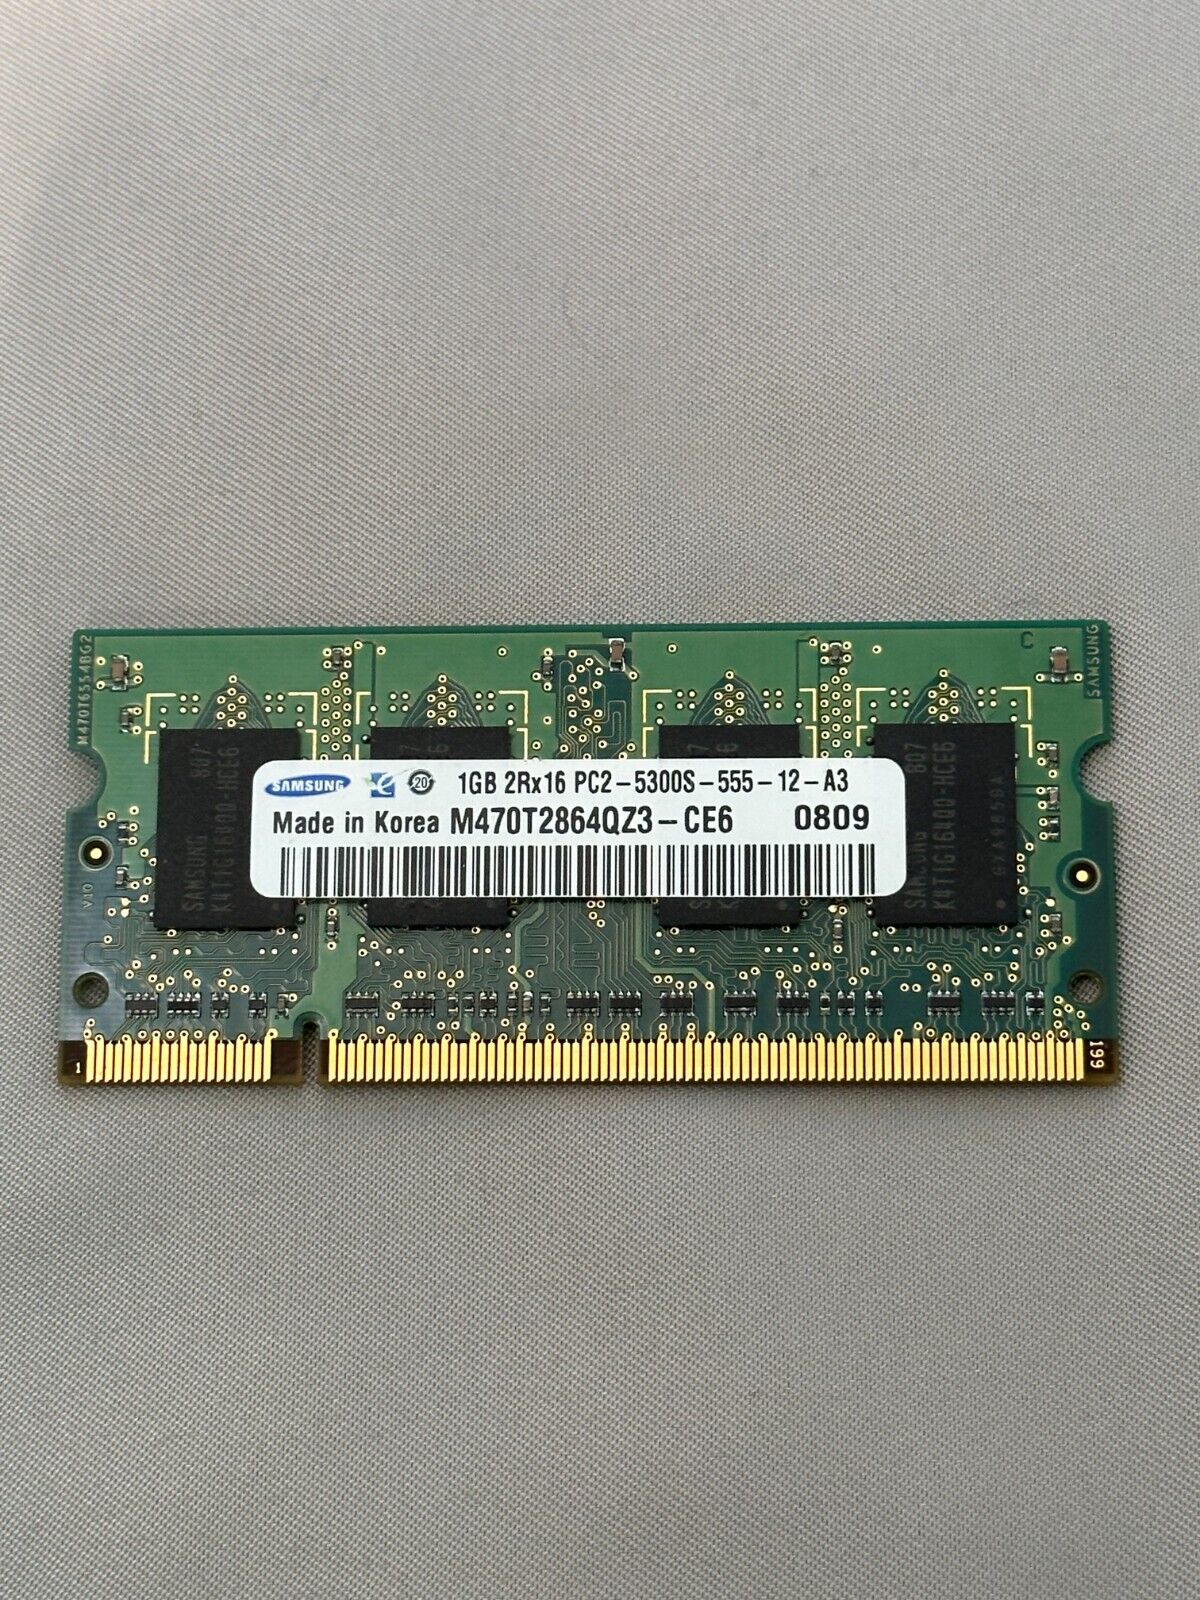 Samsung 1GB 2Rx16 PC2 - 5300S - 555 - 12 - A3 / M470T2864QZ3 - CE6